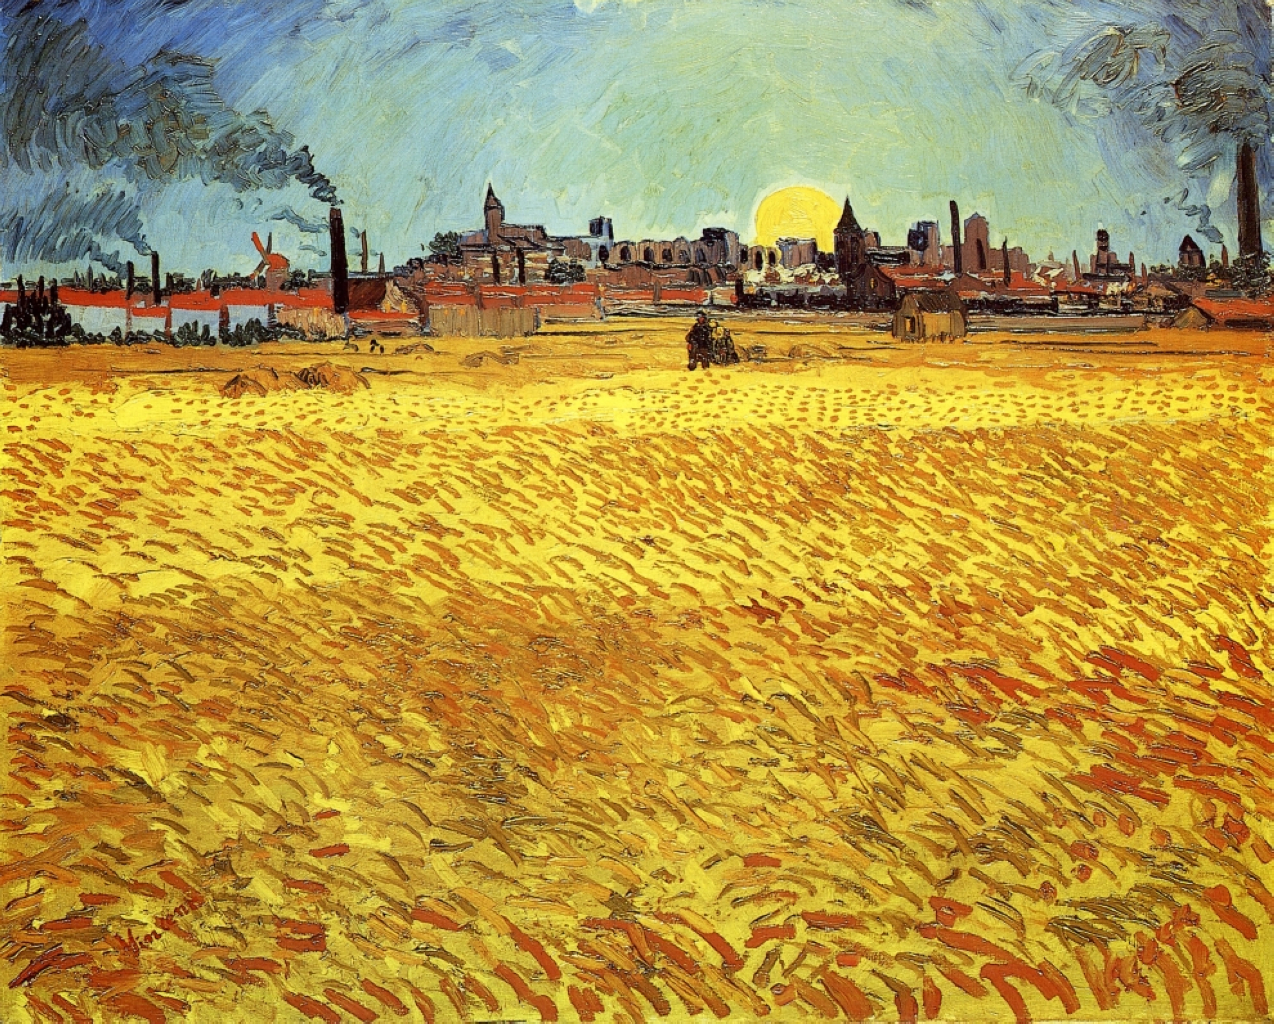 Yaz Akşamı, Batan Güneşli Buğday Tarlası by Vincent van Gogh - 1888 - 188 x 231 cm 